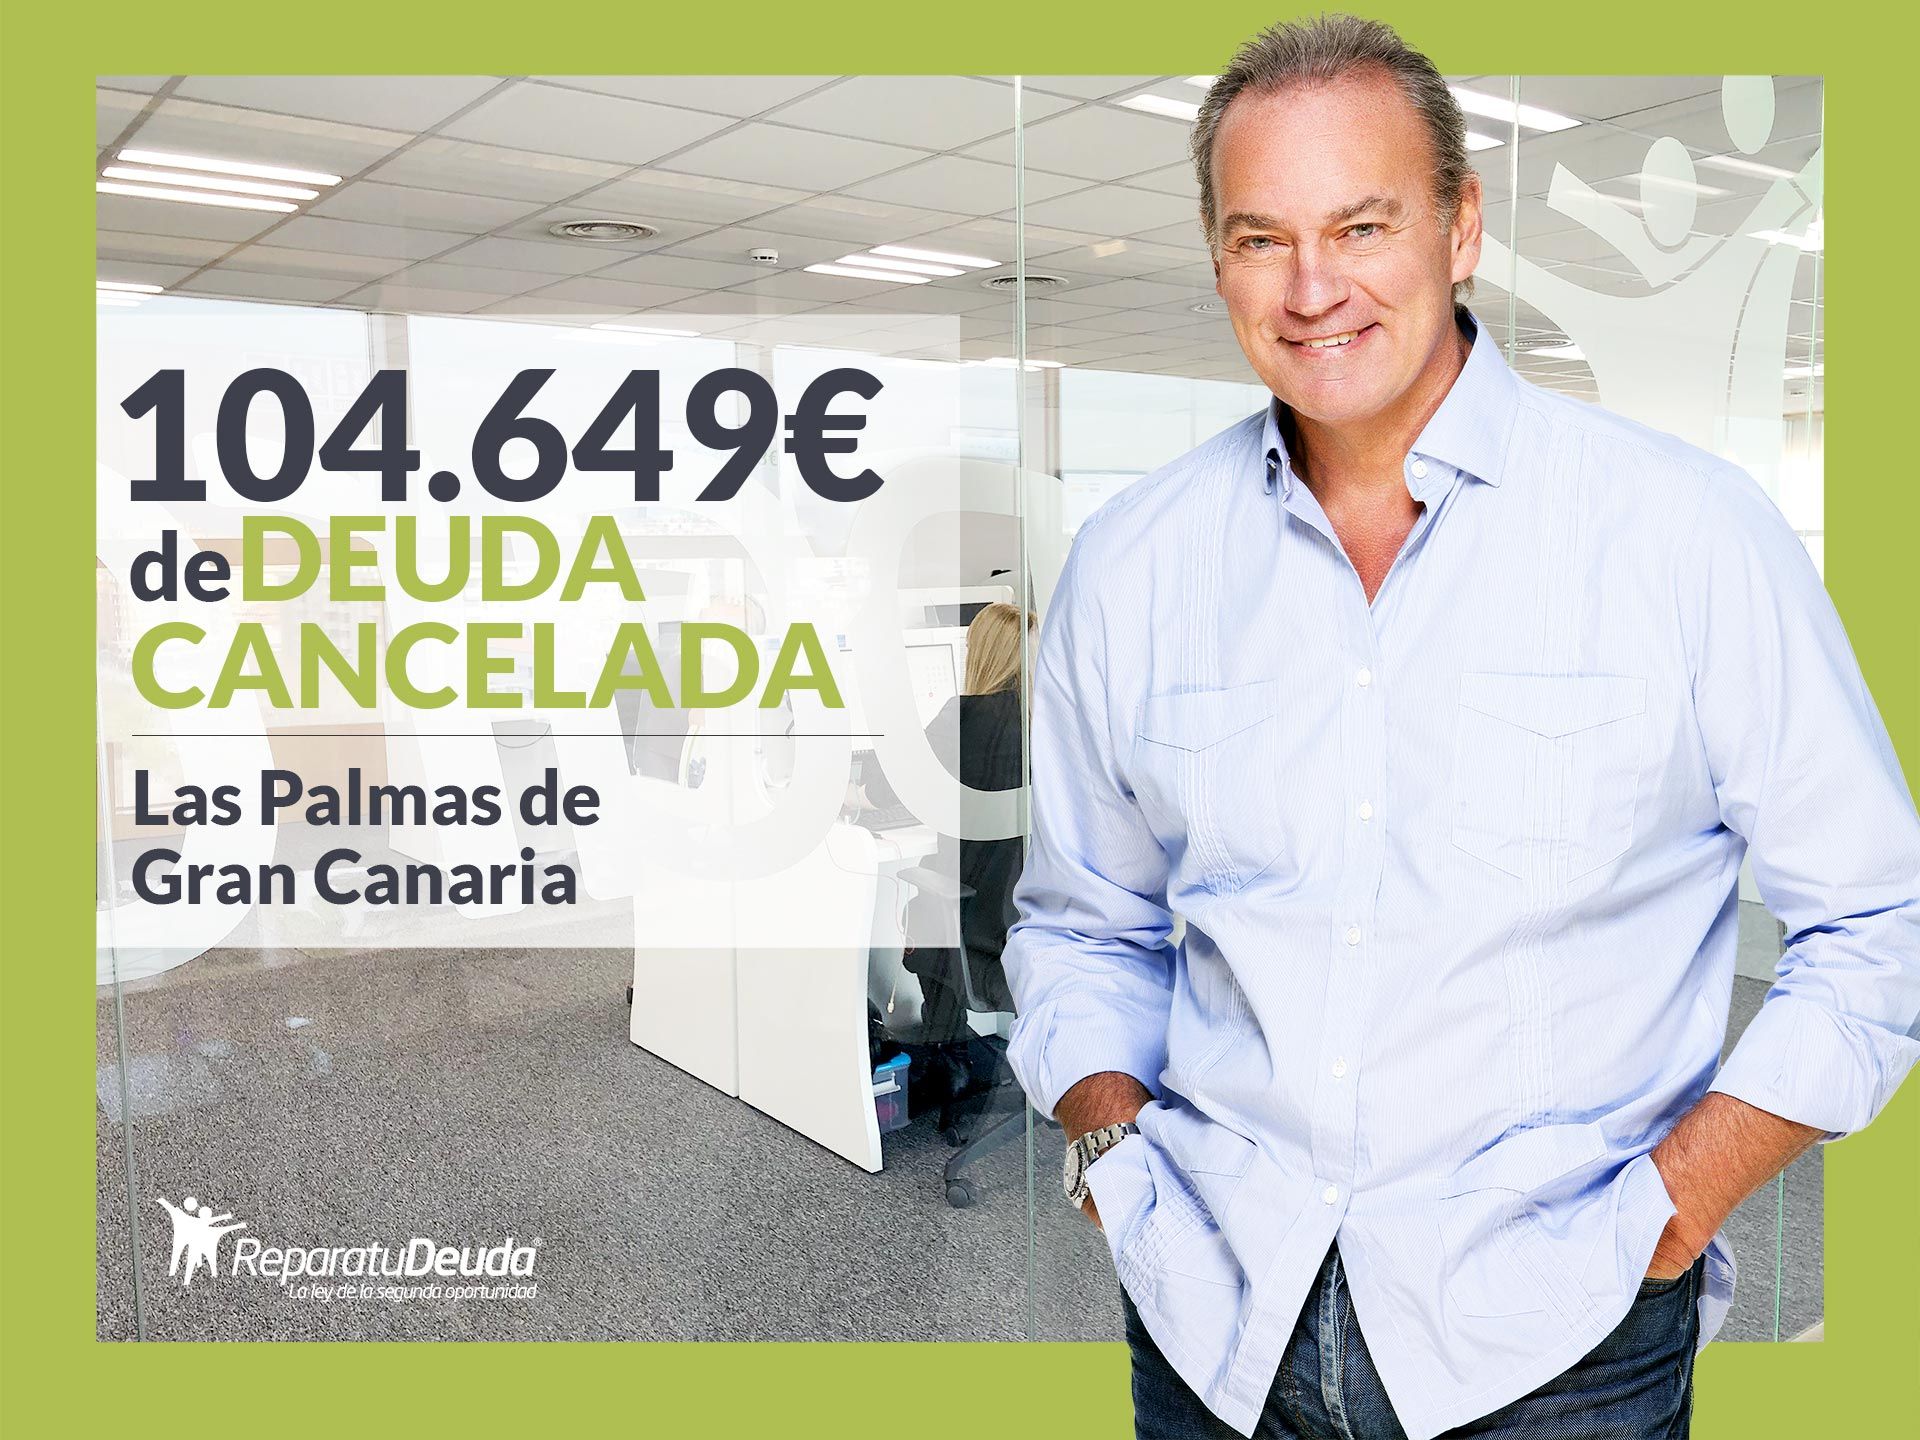 Repara tu Deuda Abogados cancela 104.649? en Las Palmas de Gran Canaria con la Ley de Segunda Oportunidad